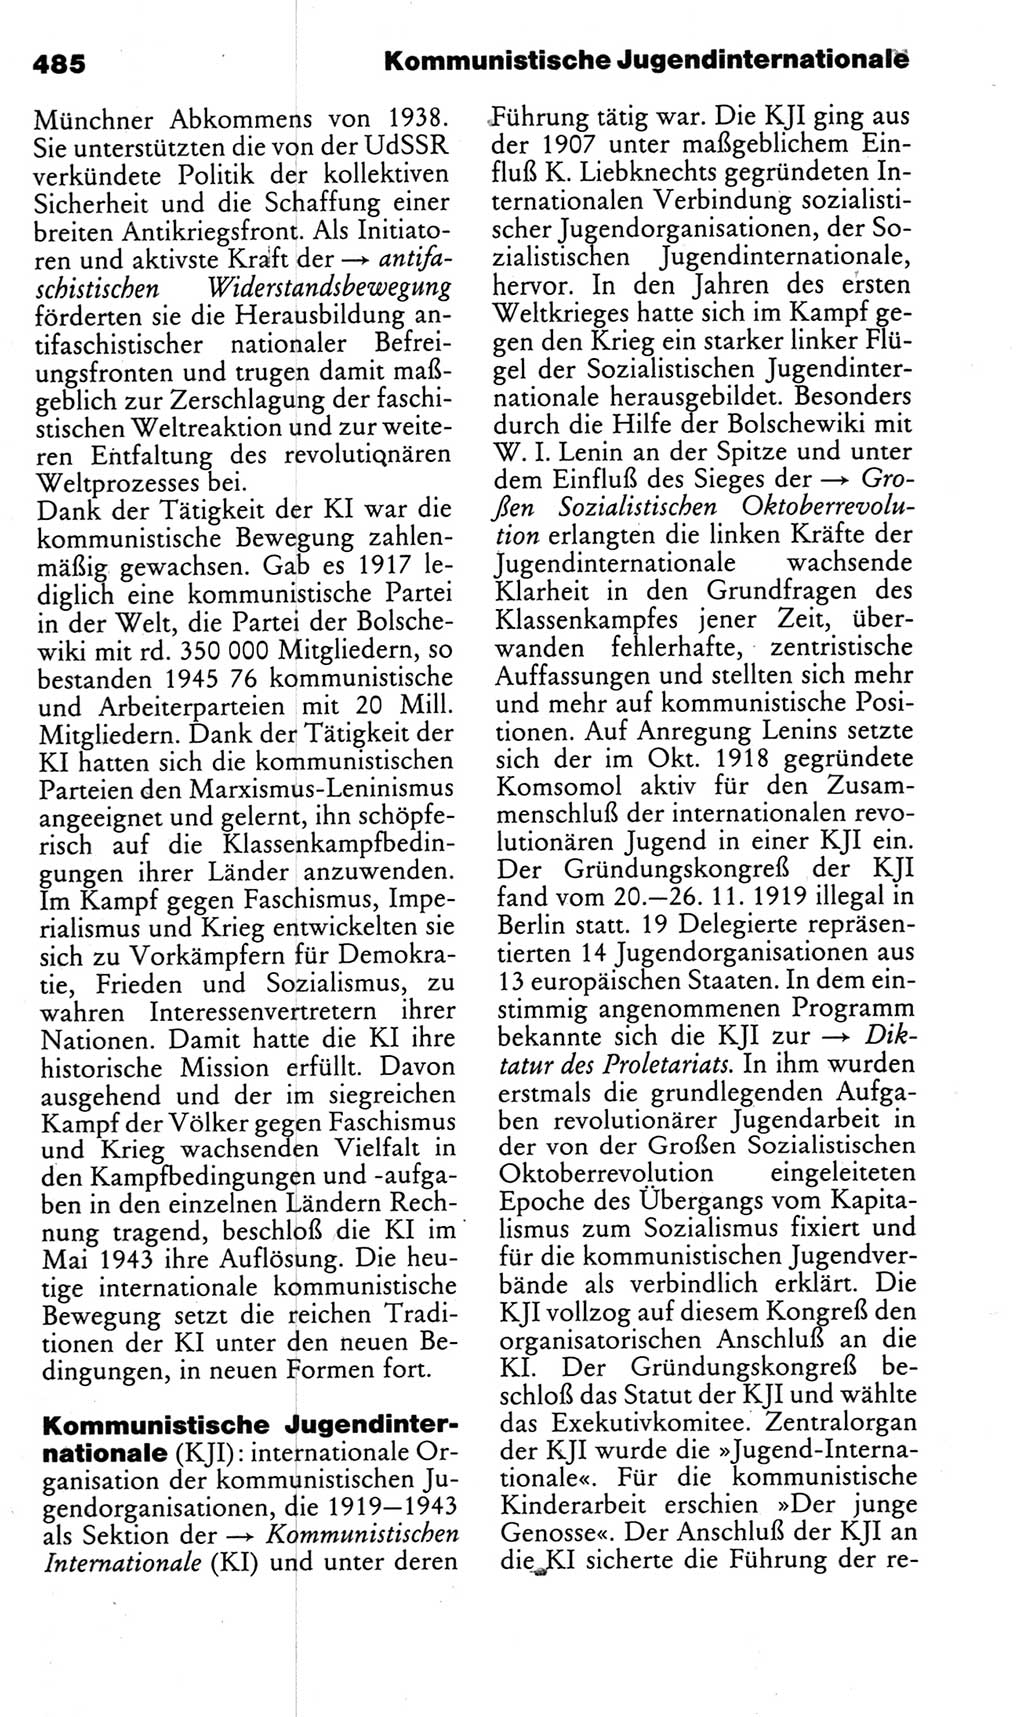 Kleines politisches Wörterbuch [Deutsche Demokratische Republik (DDR)] 1983, Seite 485 (Kl. pol. Wb. DDR 1983, S. 485)